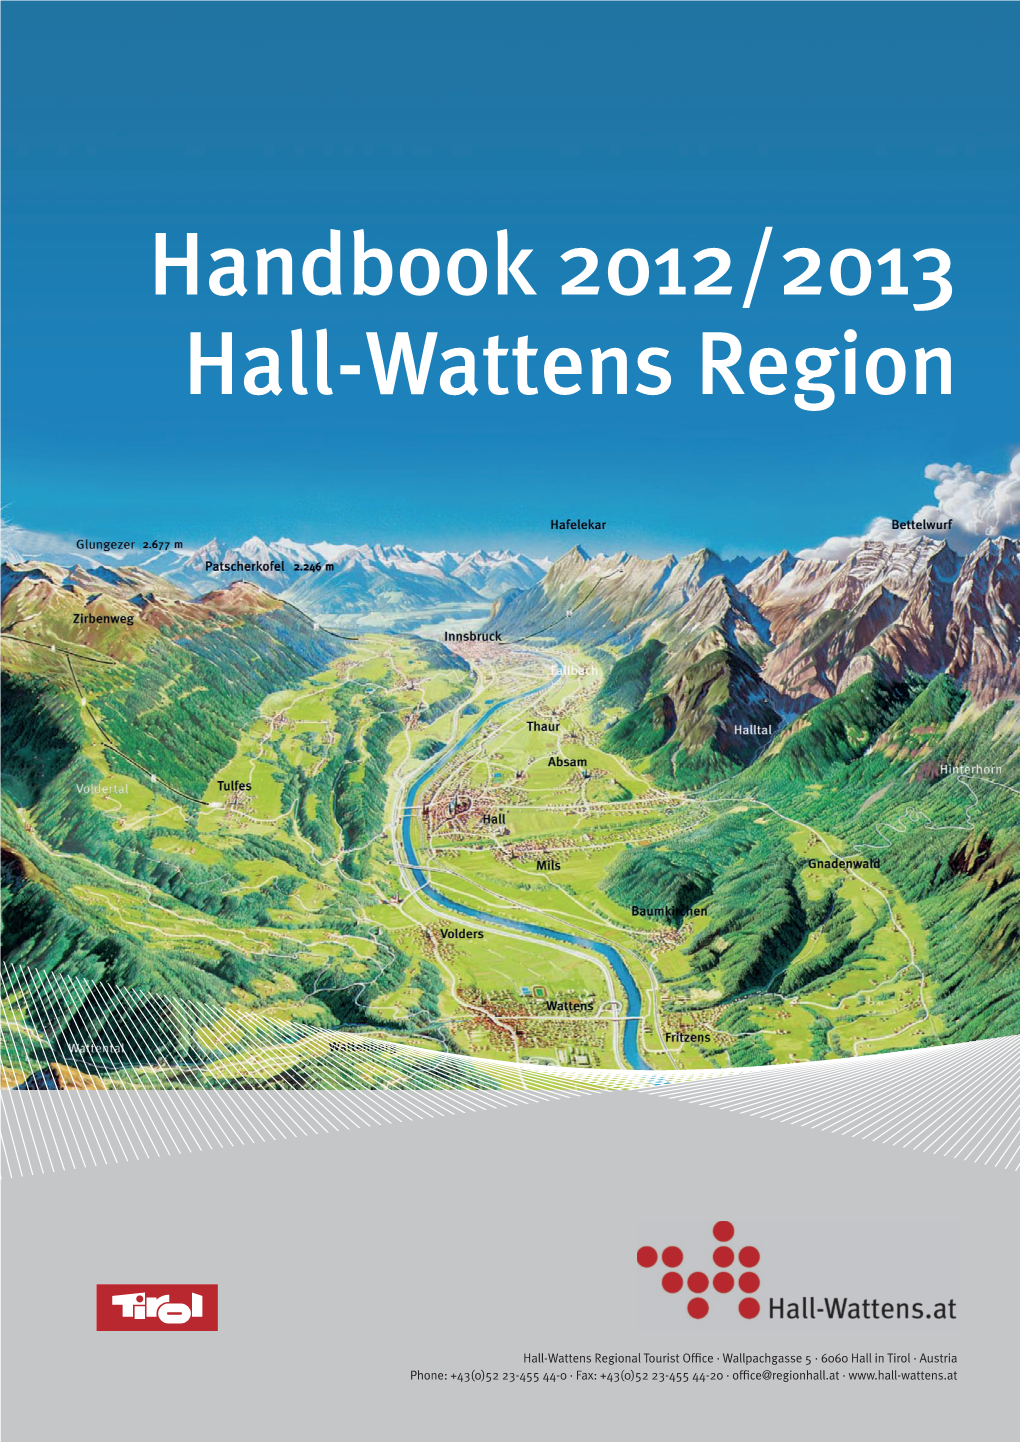 Handbook 2012/2013 Hall-Wattens Region